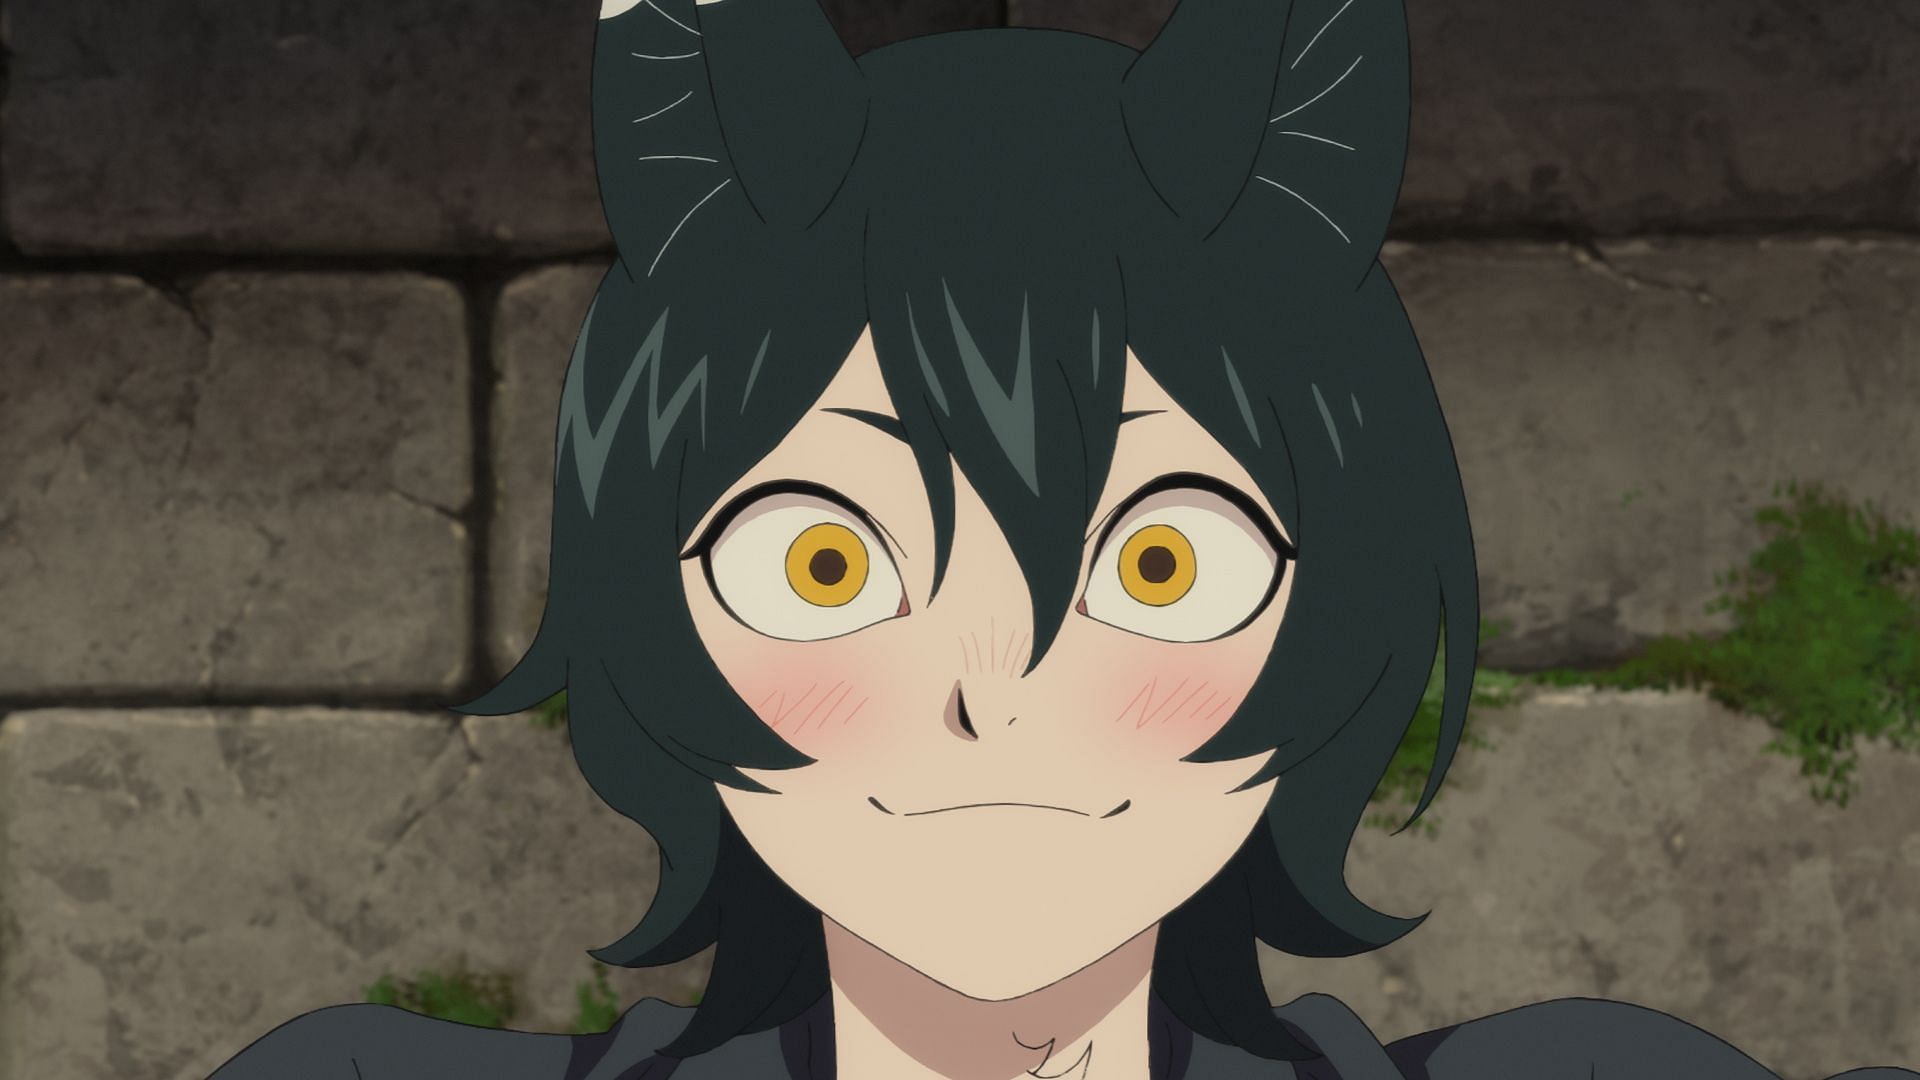 Asebi as shown in the anime (Image via Studio Trigger)